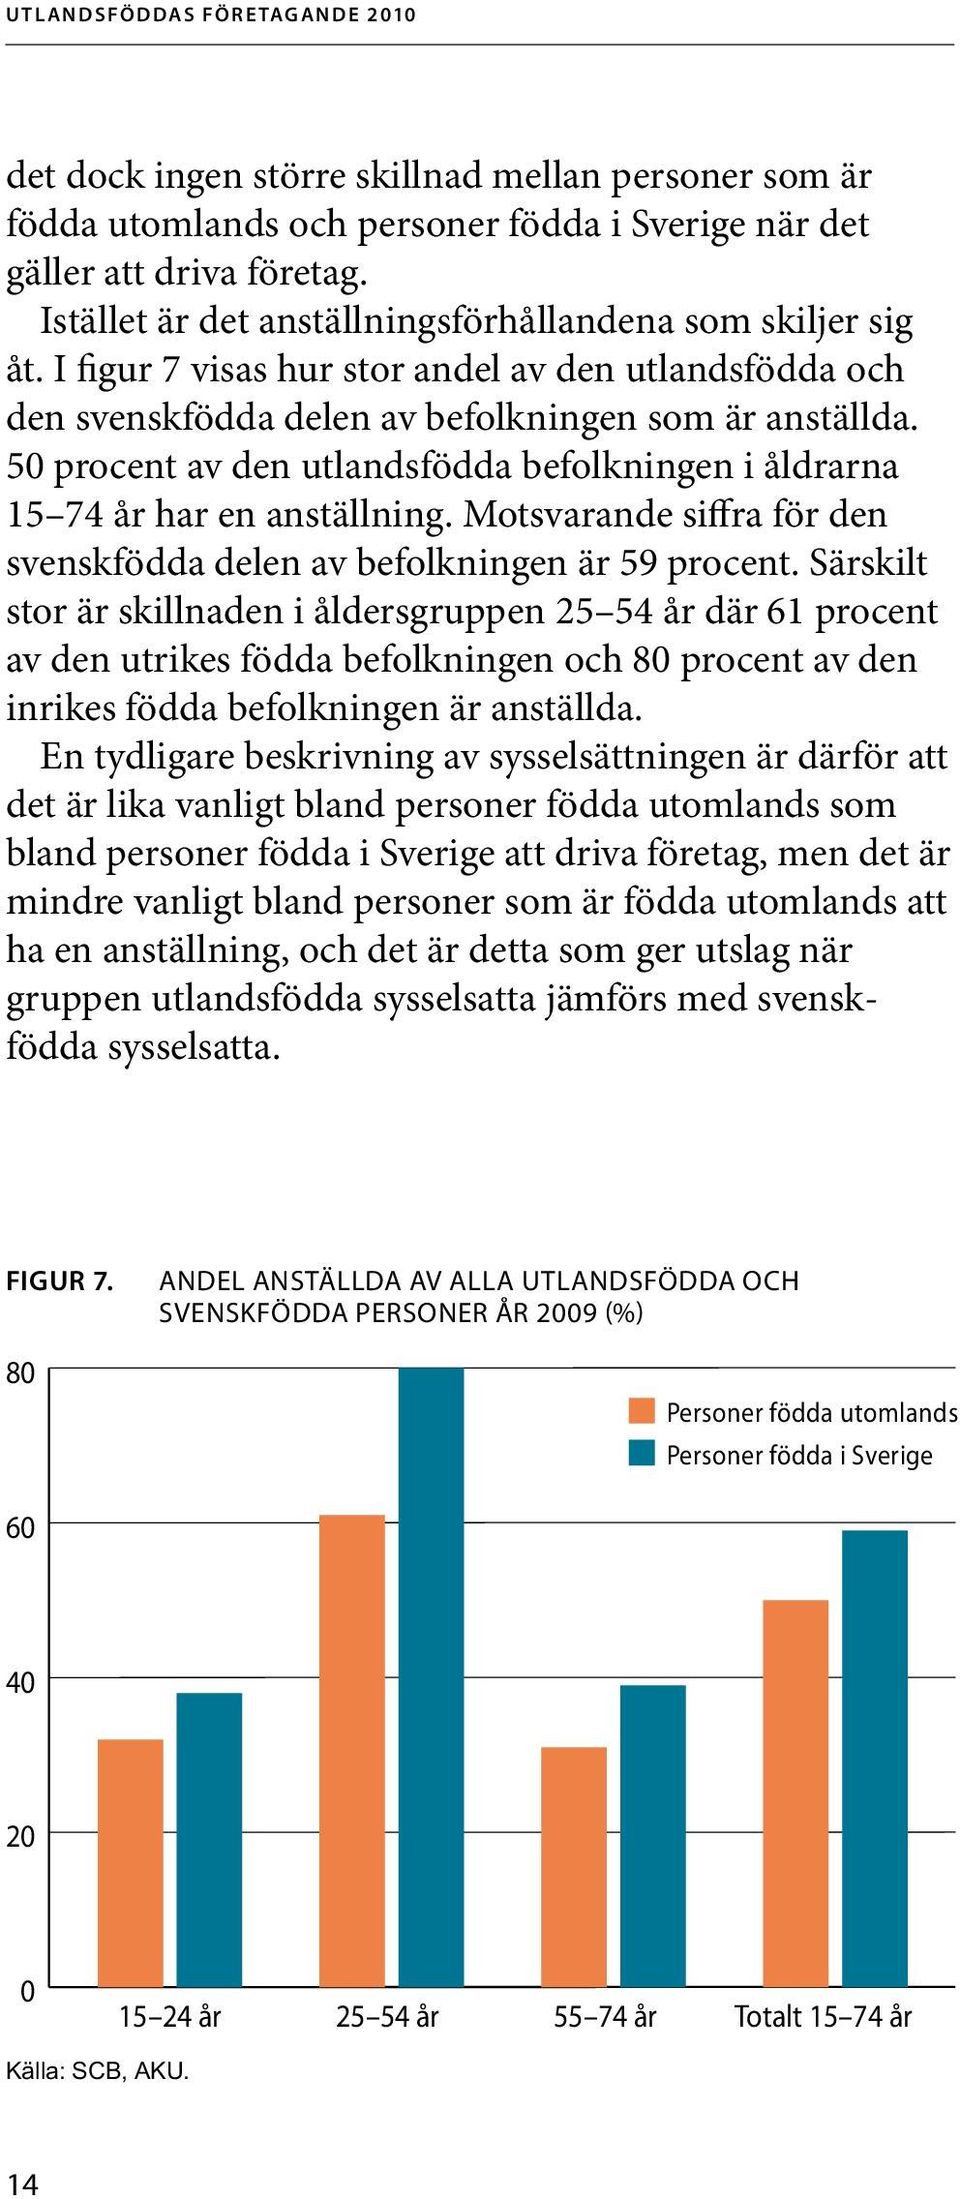 Motsvarande siffra för den svenskfödda delen av befolkningen är 59 procent.